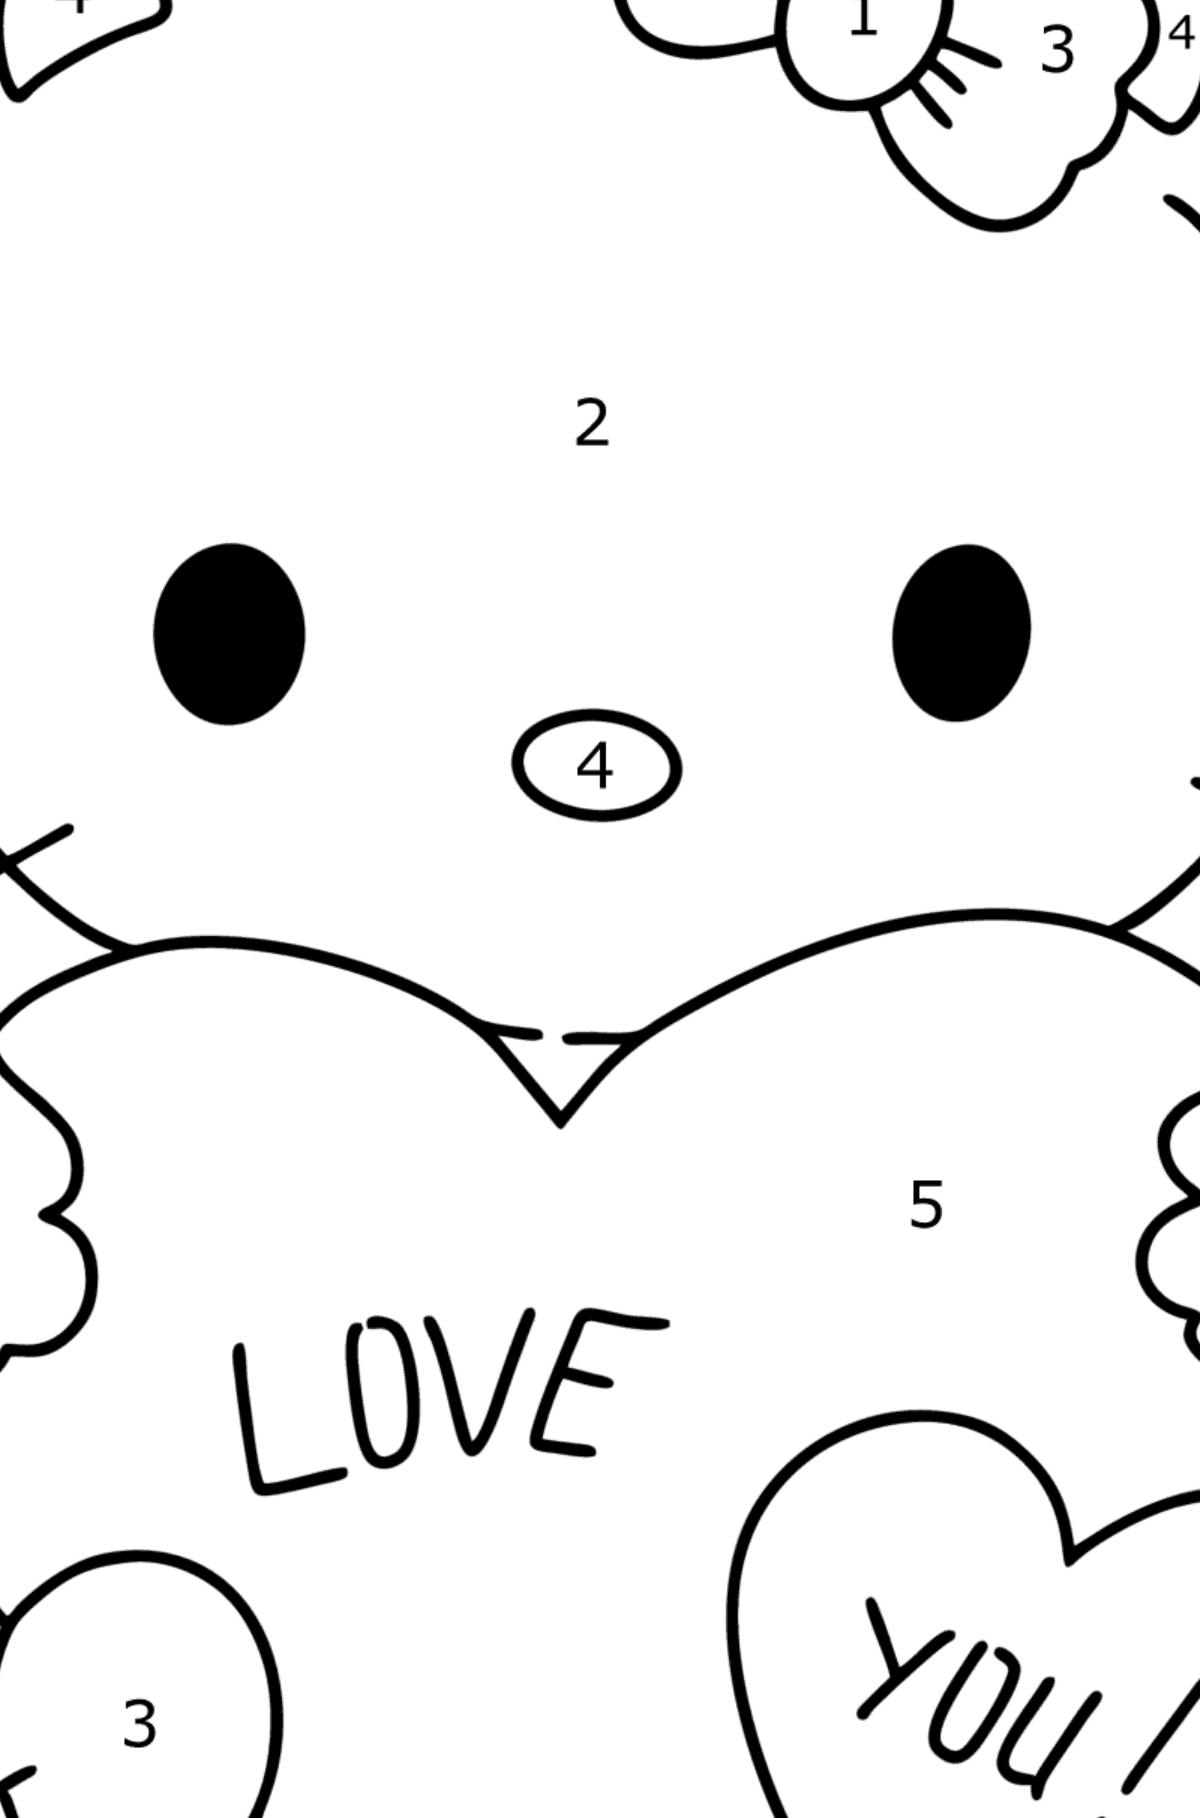 Boyama sayfası Hello Kitty ve kalpler - Sayılarla Boyama çocuklar için